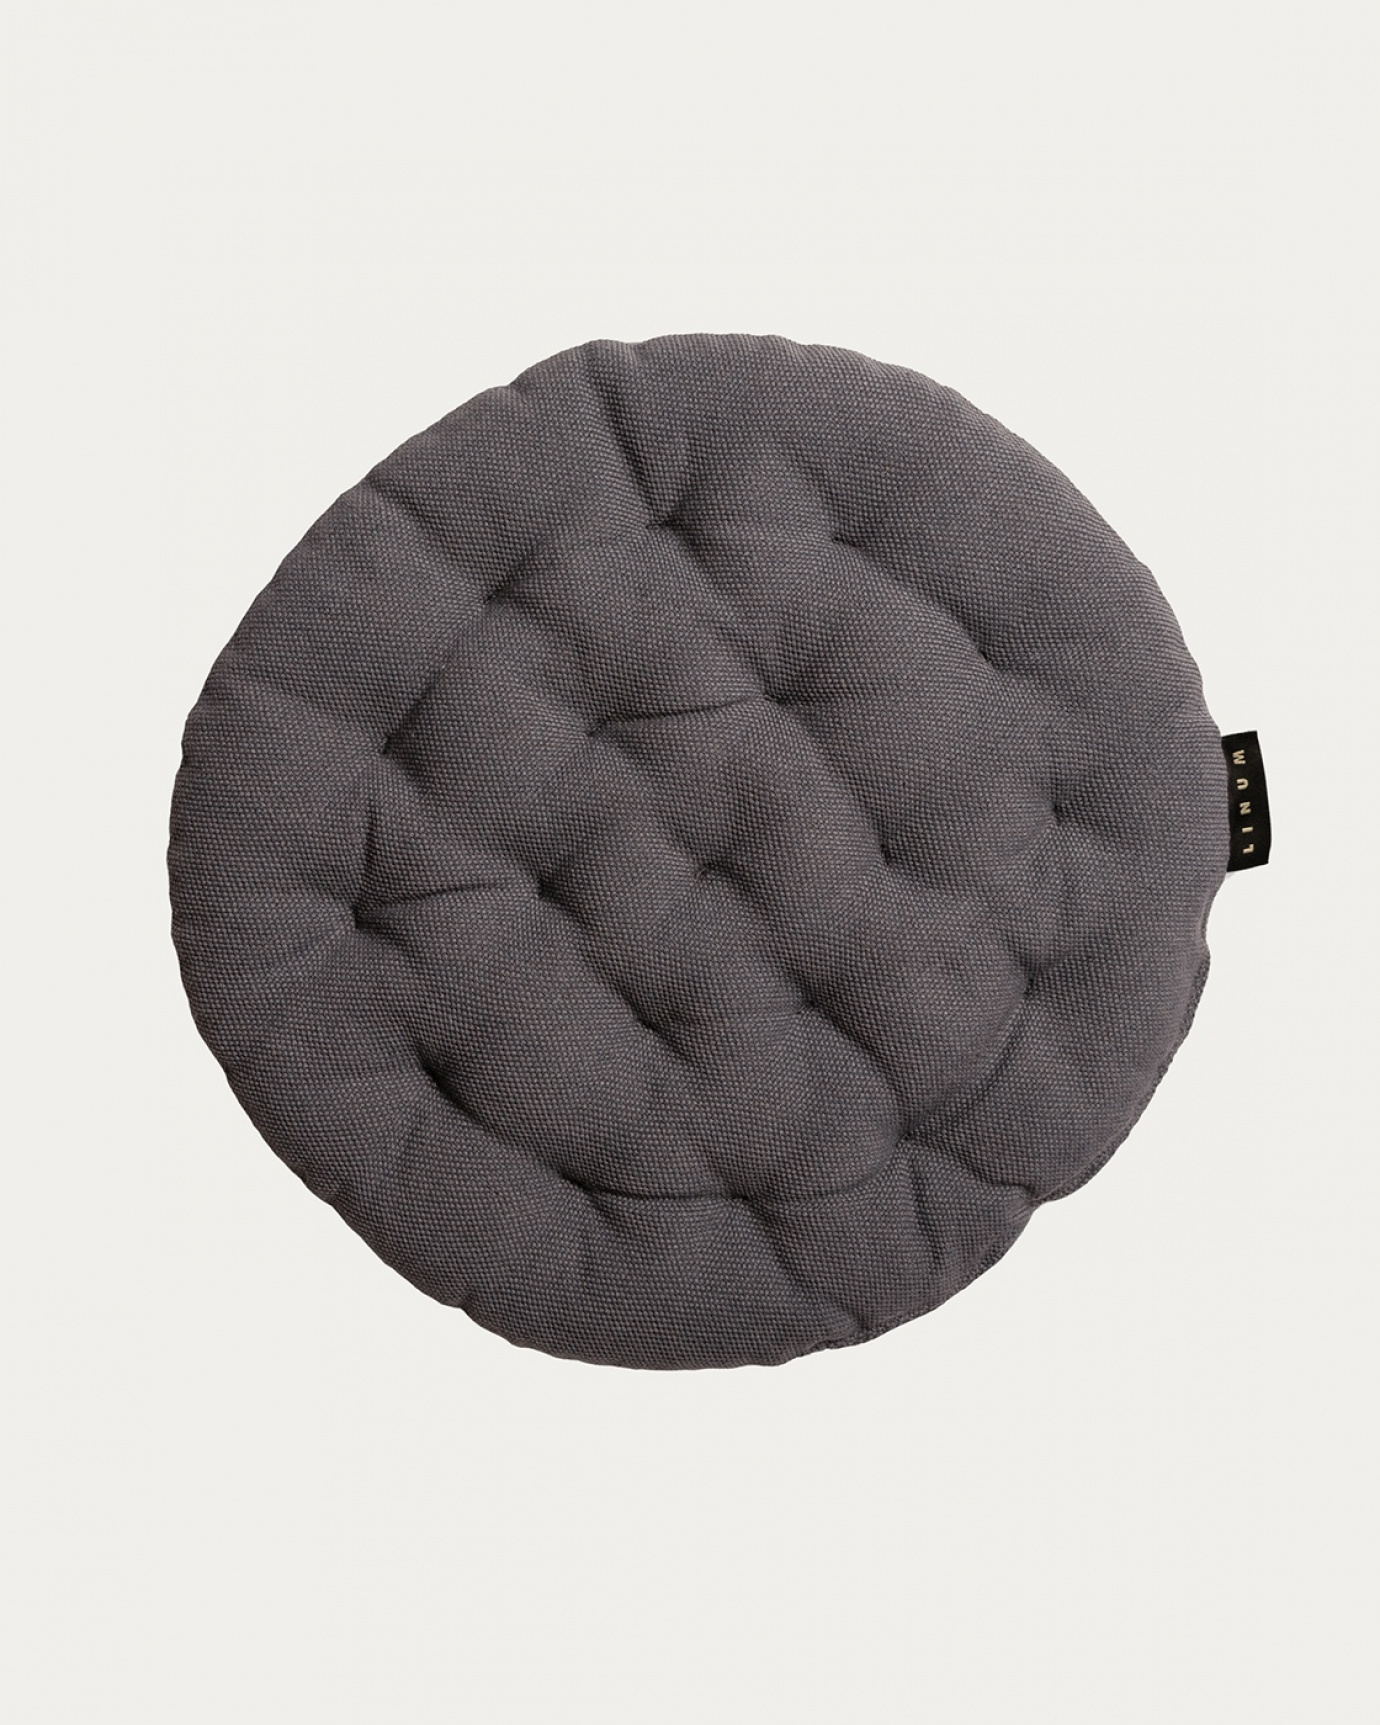 Produktbild granitgrau PEPPER Sitzkissen aus weicher Baumwolle mit Füllung aus recyceltem Polyester von LINUM DESIGN. Größe ø37 cm.